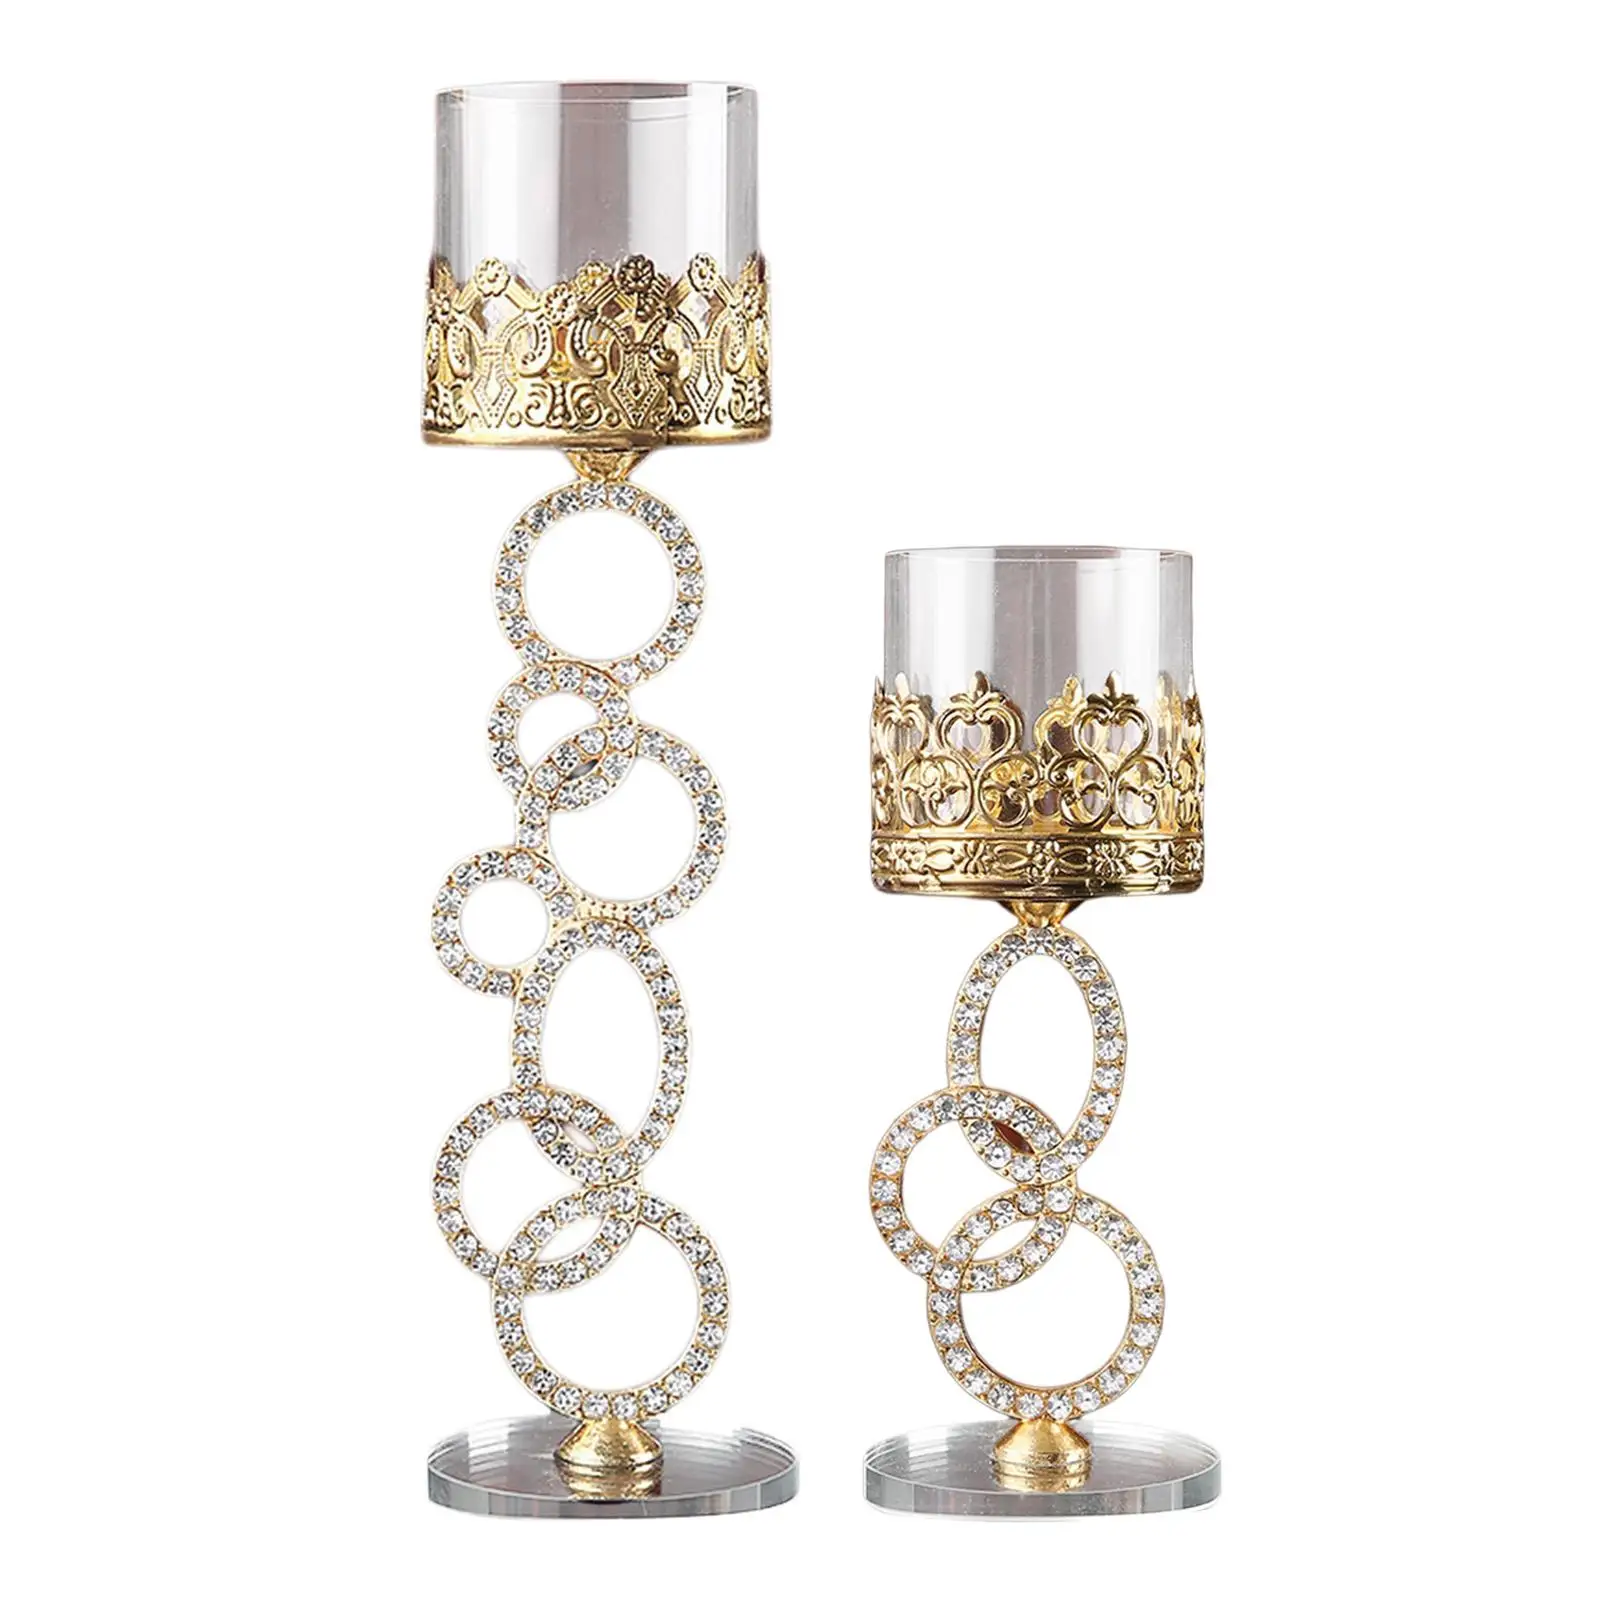 Cylinder Crystal Candlestick, Decorative Tea Light Holder Ornament Holders for Tabletop Cafe Wedding Home Decor